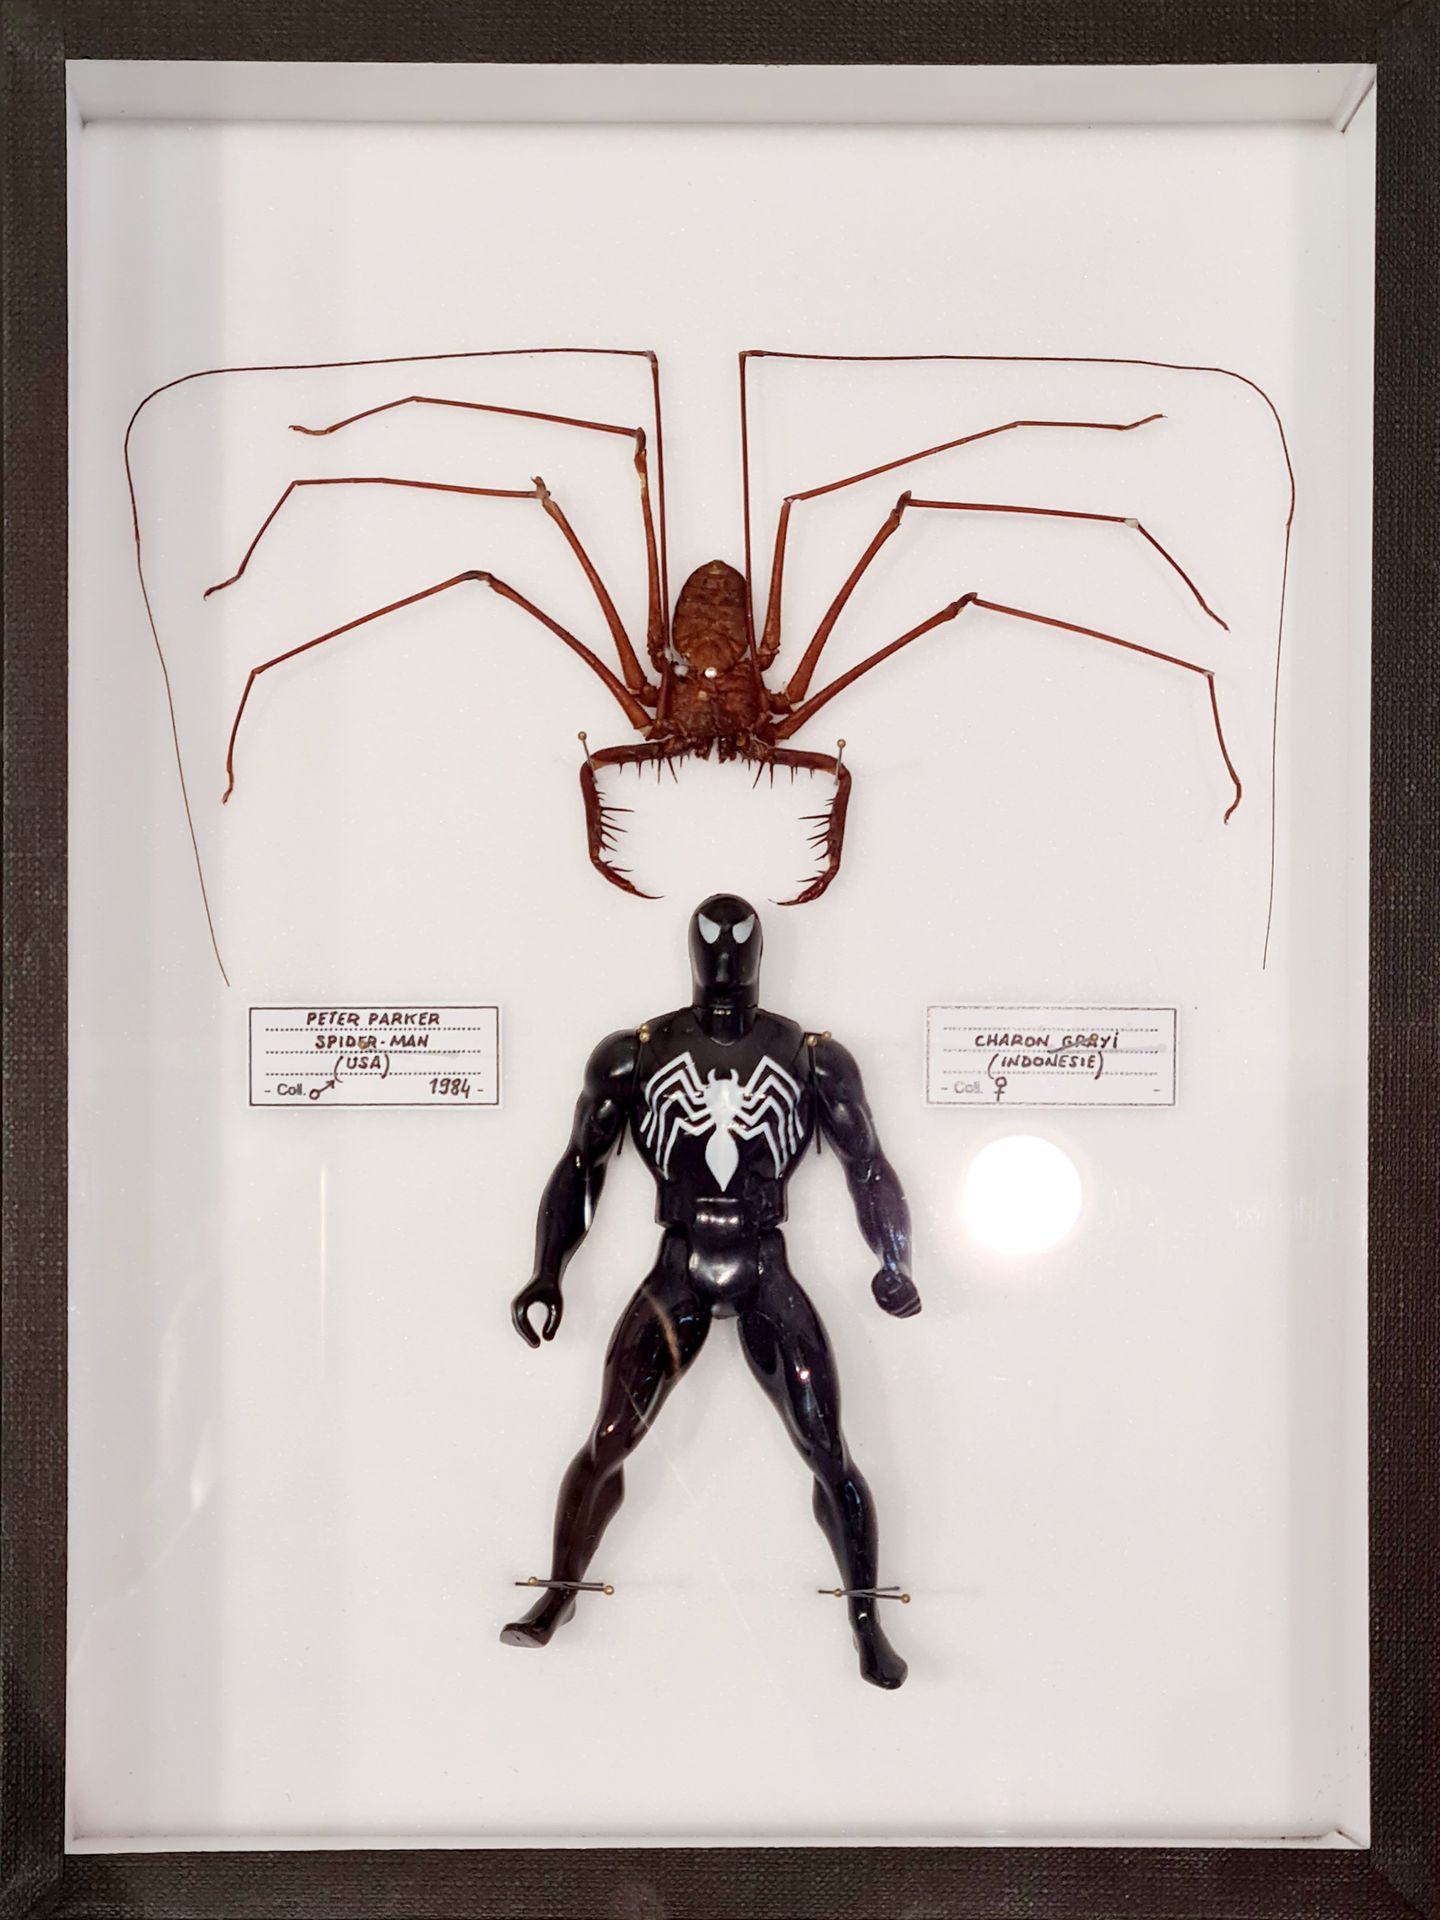 B. Pietri B.皮埃特里--蜘蛛人

钉在昆虫学家玻璃柜中的真蜘蛛和复古小雕像

独特的作品，手工签名。状况非常好，26 x 19.5 x 5.5厘米
&hellip;